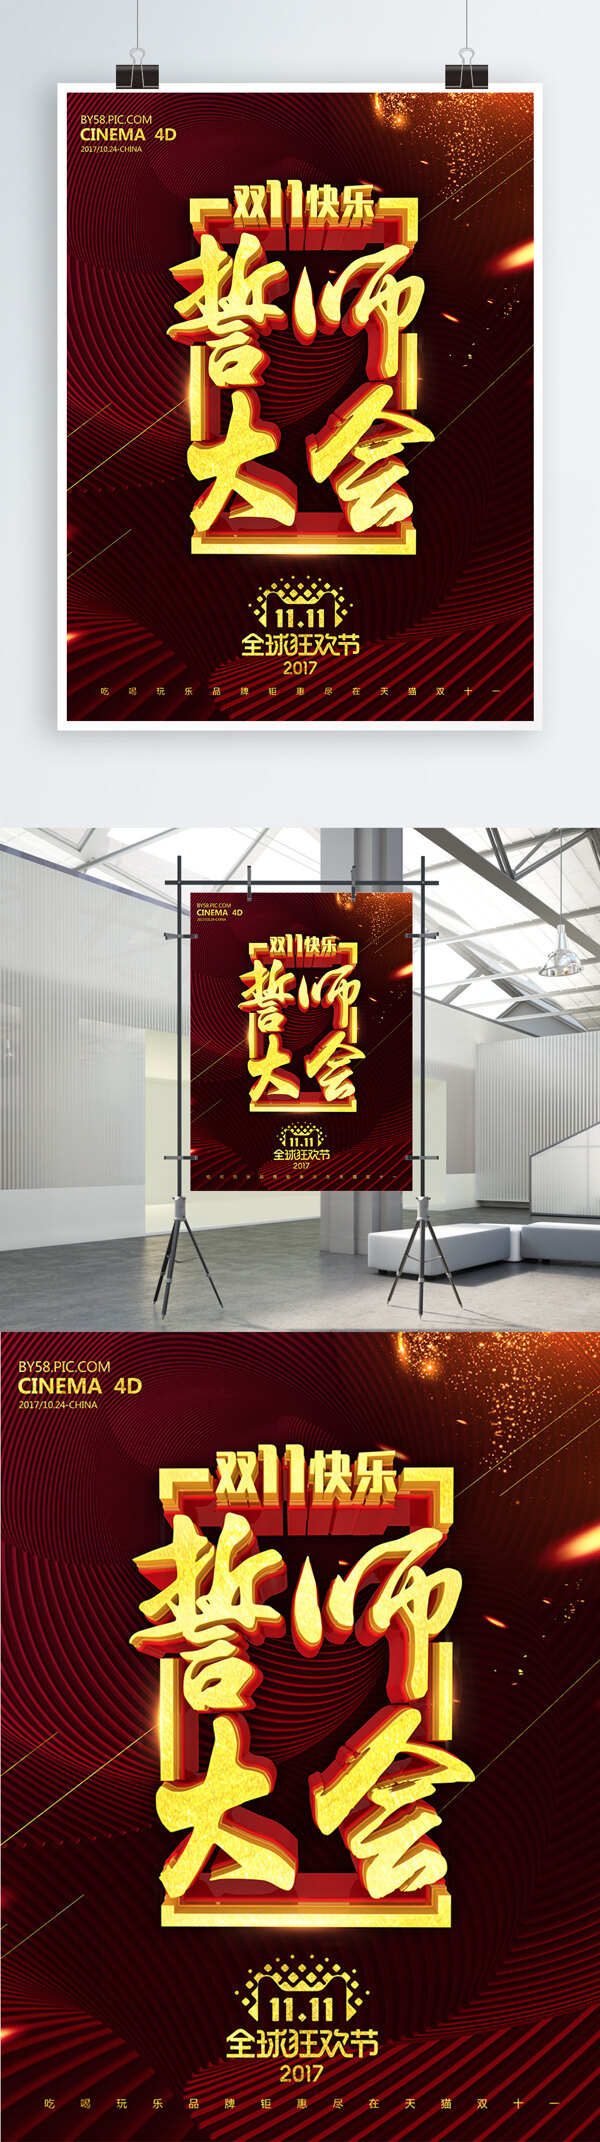 C4D精品渲染双11誓师大会商业海报设计